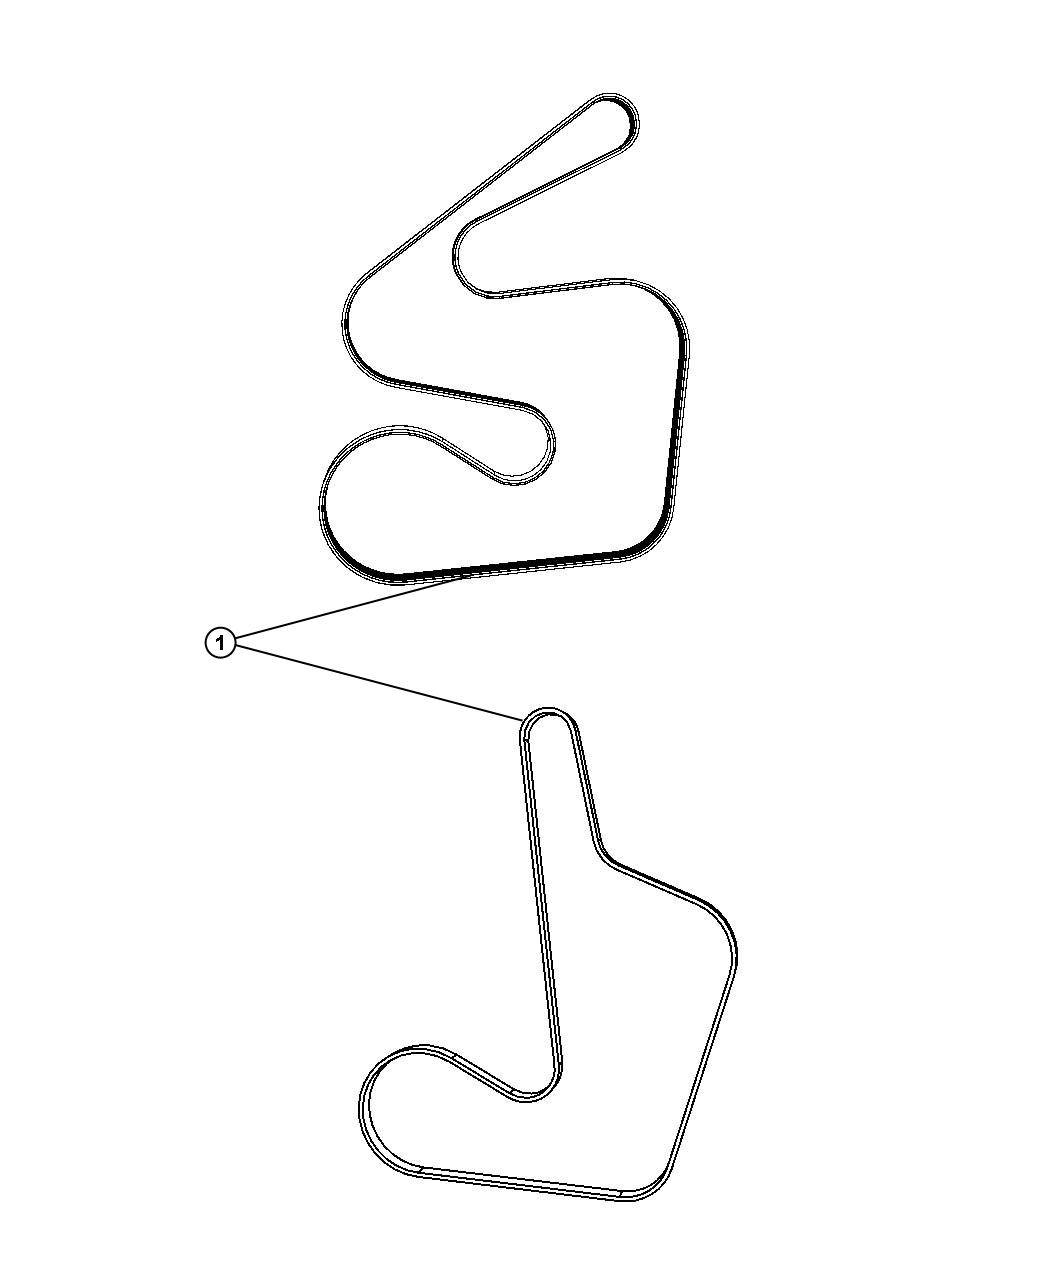 Belts Serpentine and V-Belts. Diagram